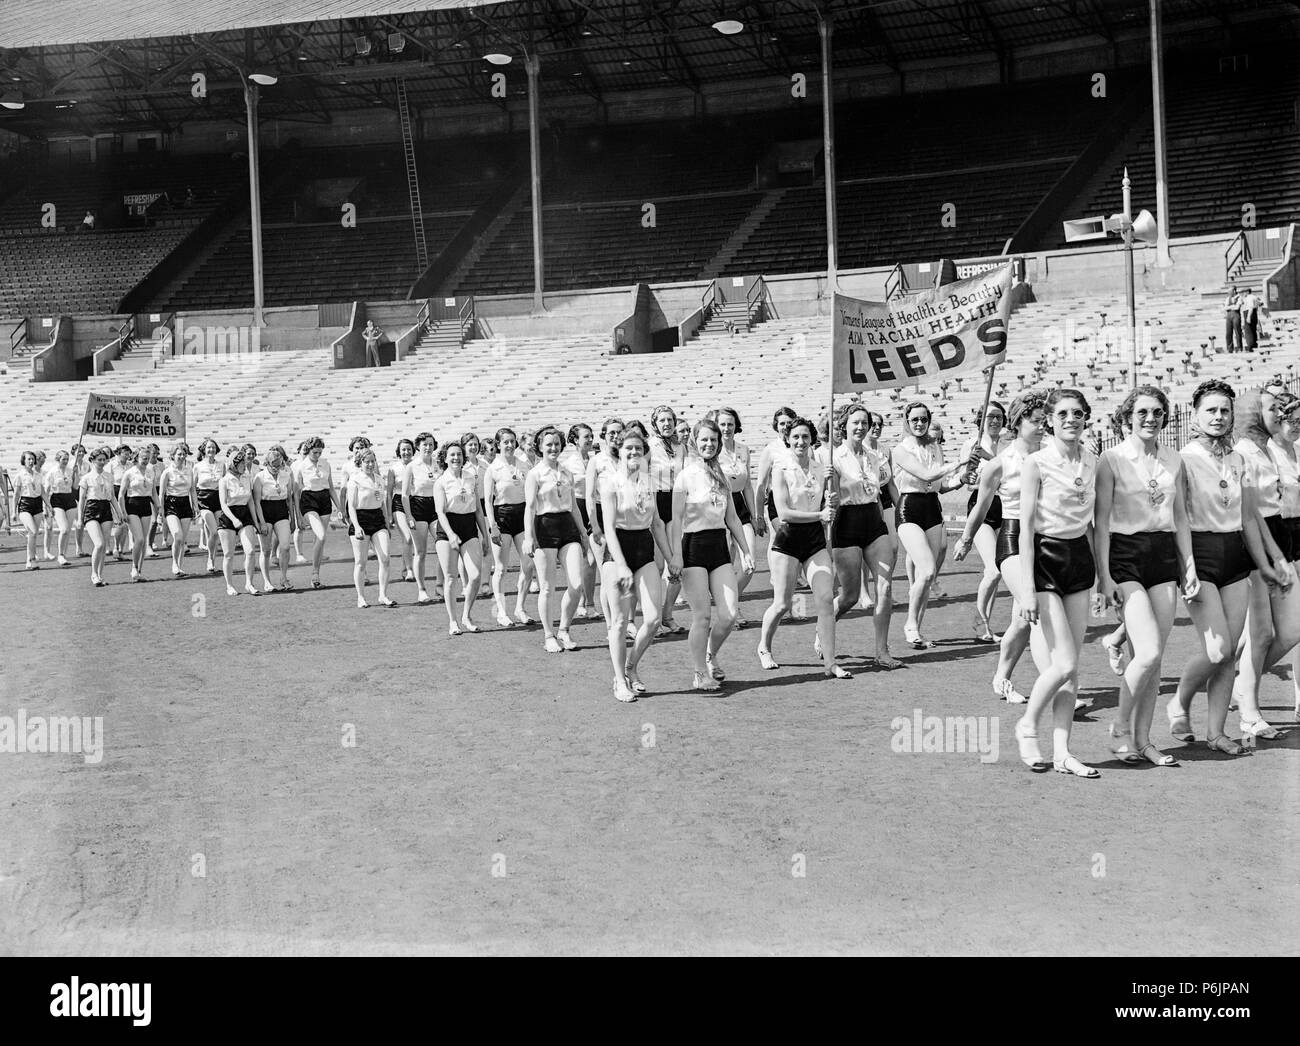 Les membres de la Ligue des femmes de la santé et de la beauté, en marchant à l'intérieur d'un grand stade de l'Angleterre durant les années 1930. Les bannières de la branches à Leeds et Harrogate et Huddersfield sont visibles. Ils font campagne sur la santé raciale. Banque D'Images